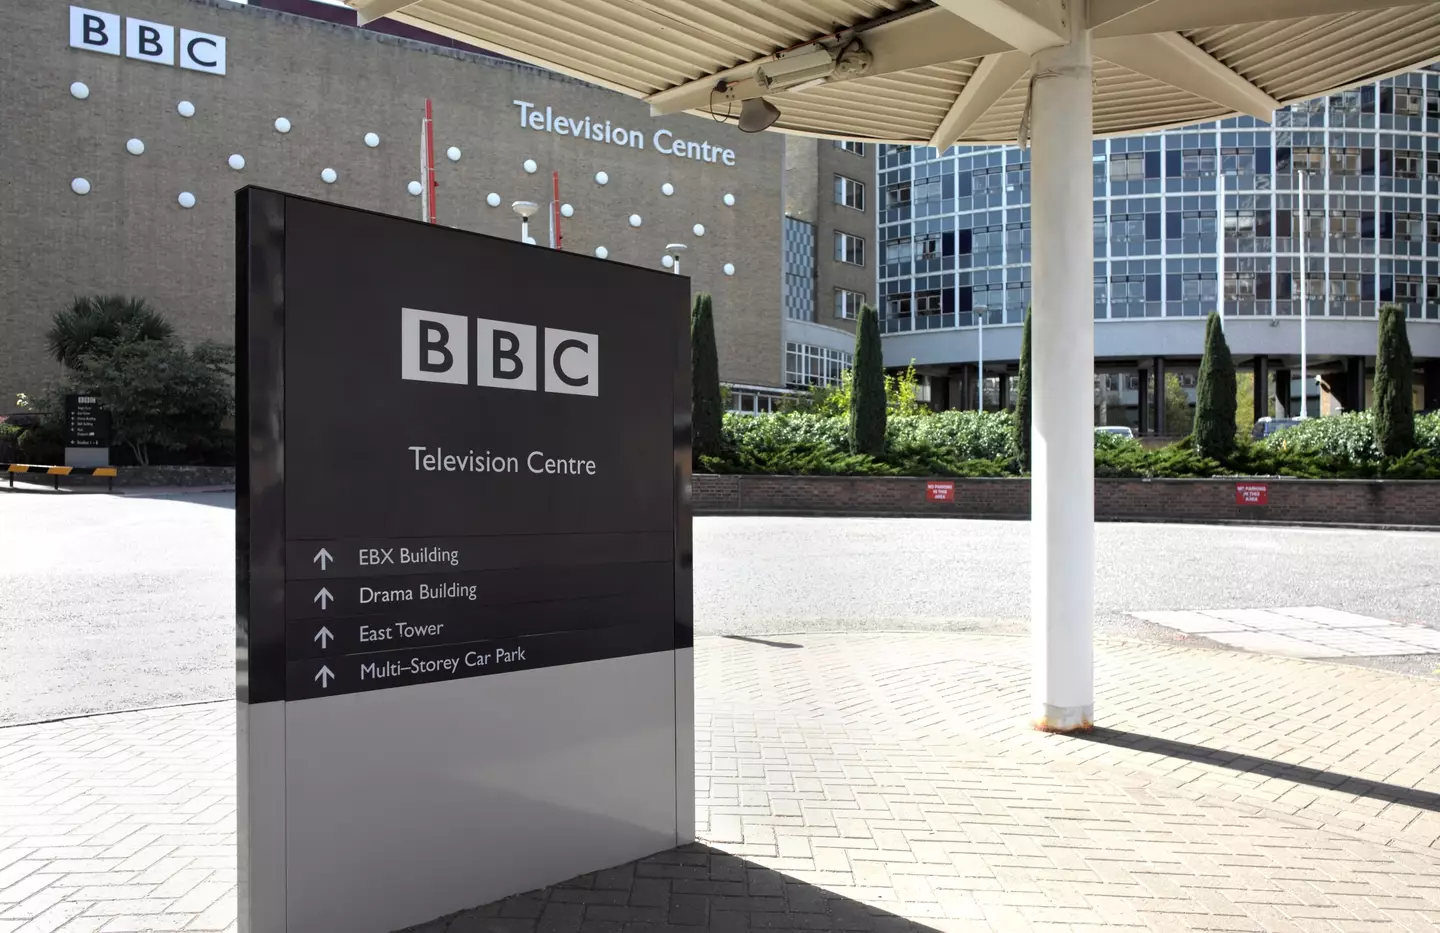 BBC Television Centre.